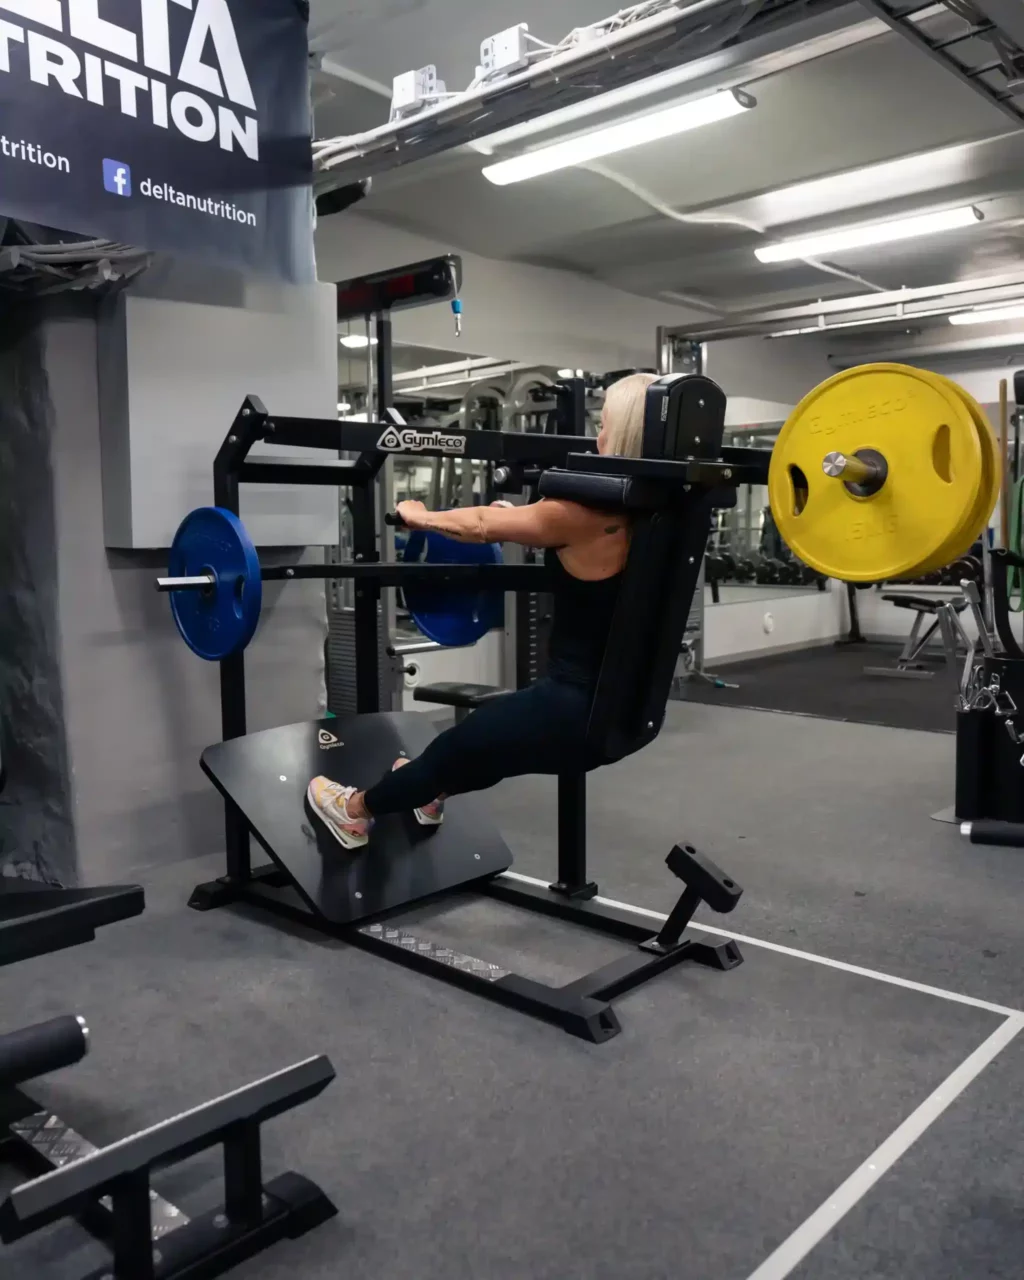 delta-gym-pendulum-squat